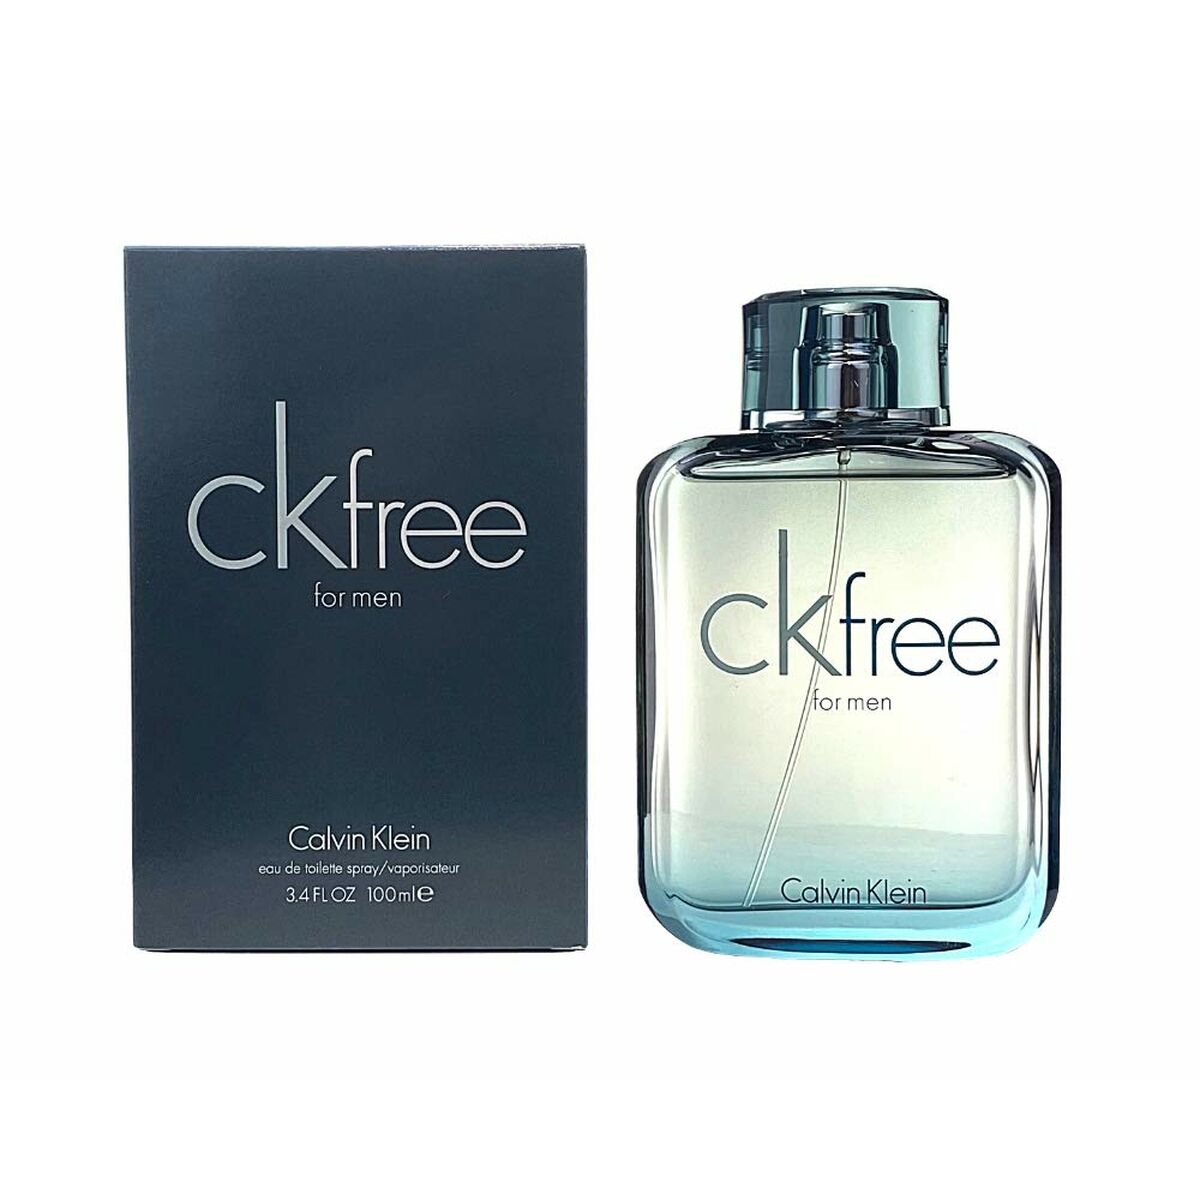 Parfum Homme Calvin Klein EDT 100 ml Ck Free